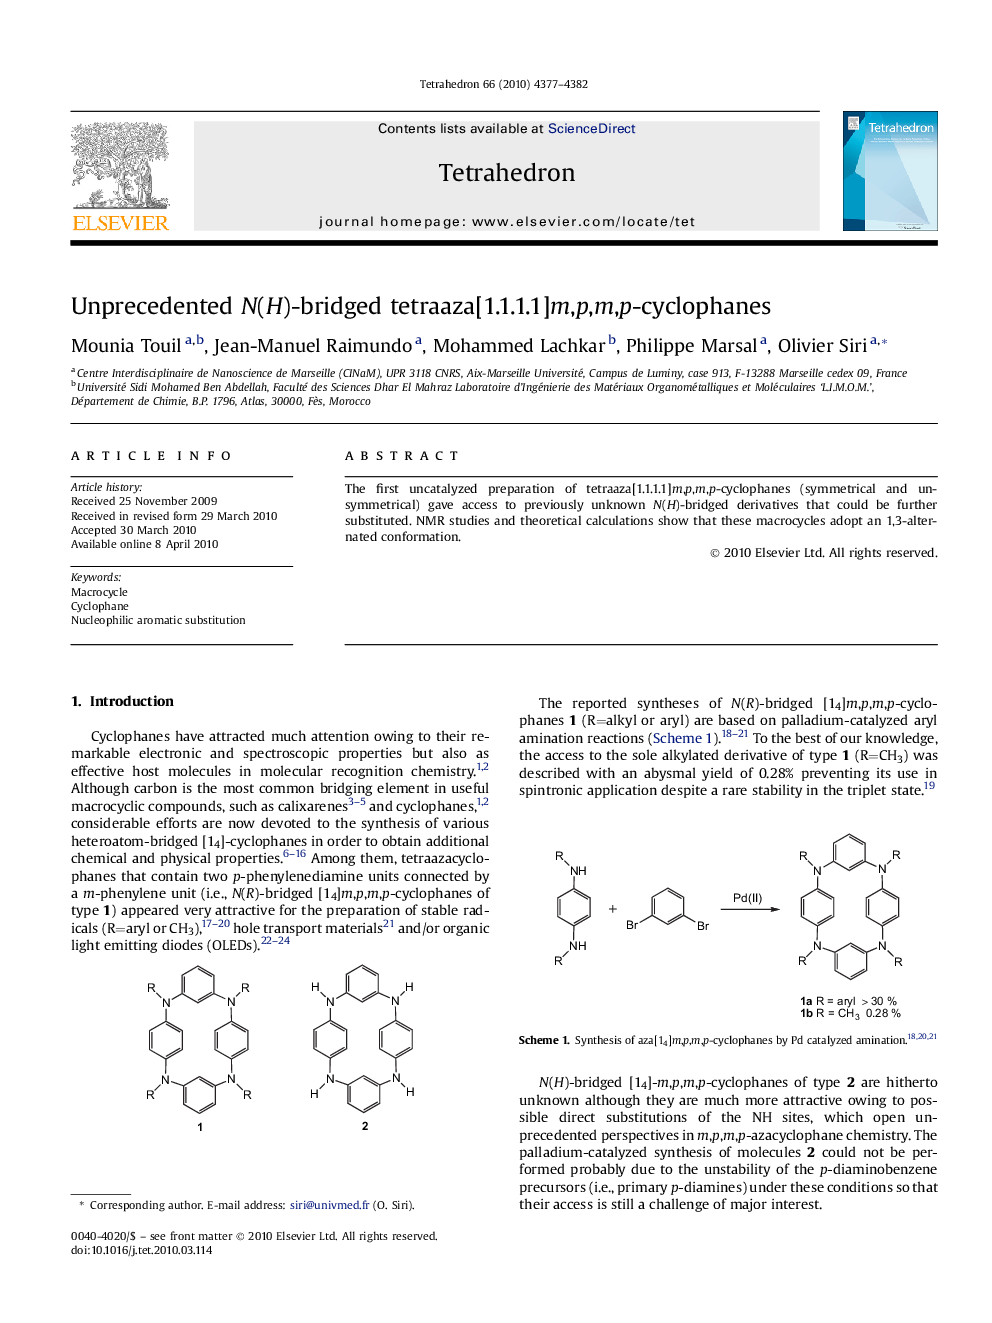 Unprecedented N(H)-bridged tetraaza[1.1.1.1]m,p,m,p-cyclophanes